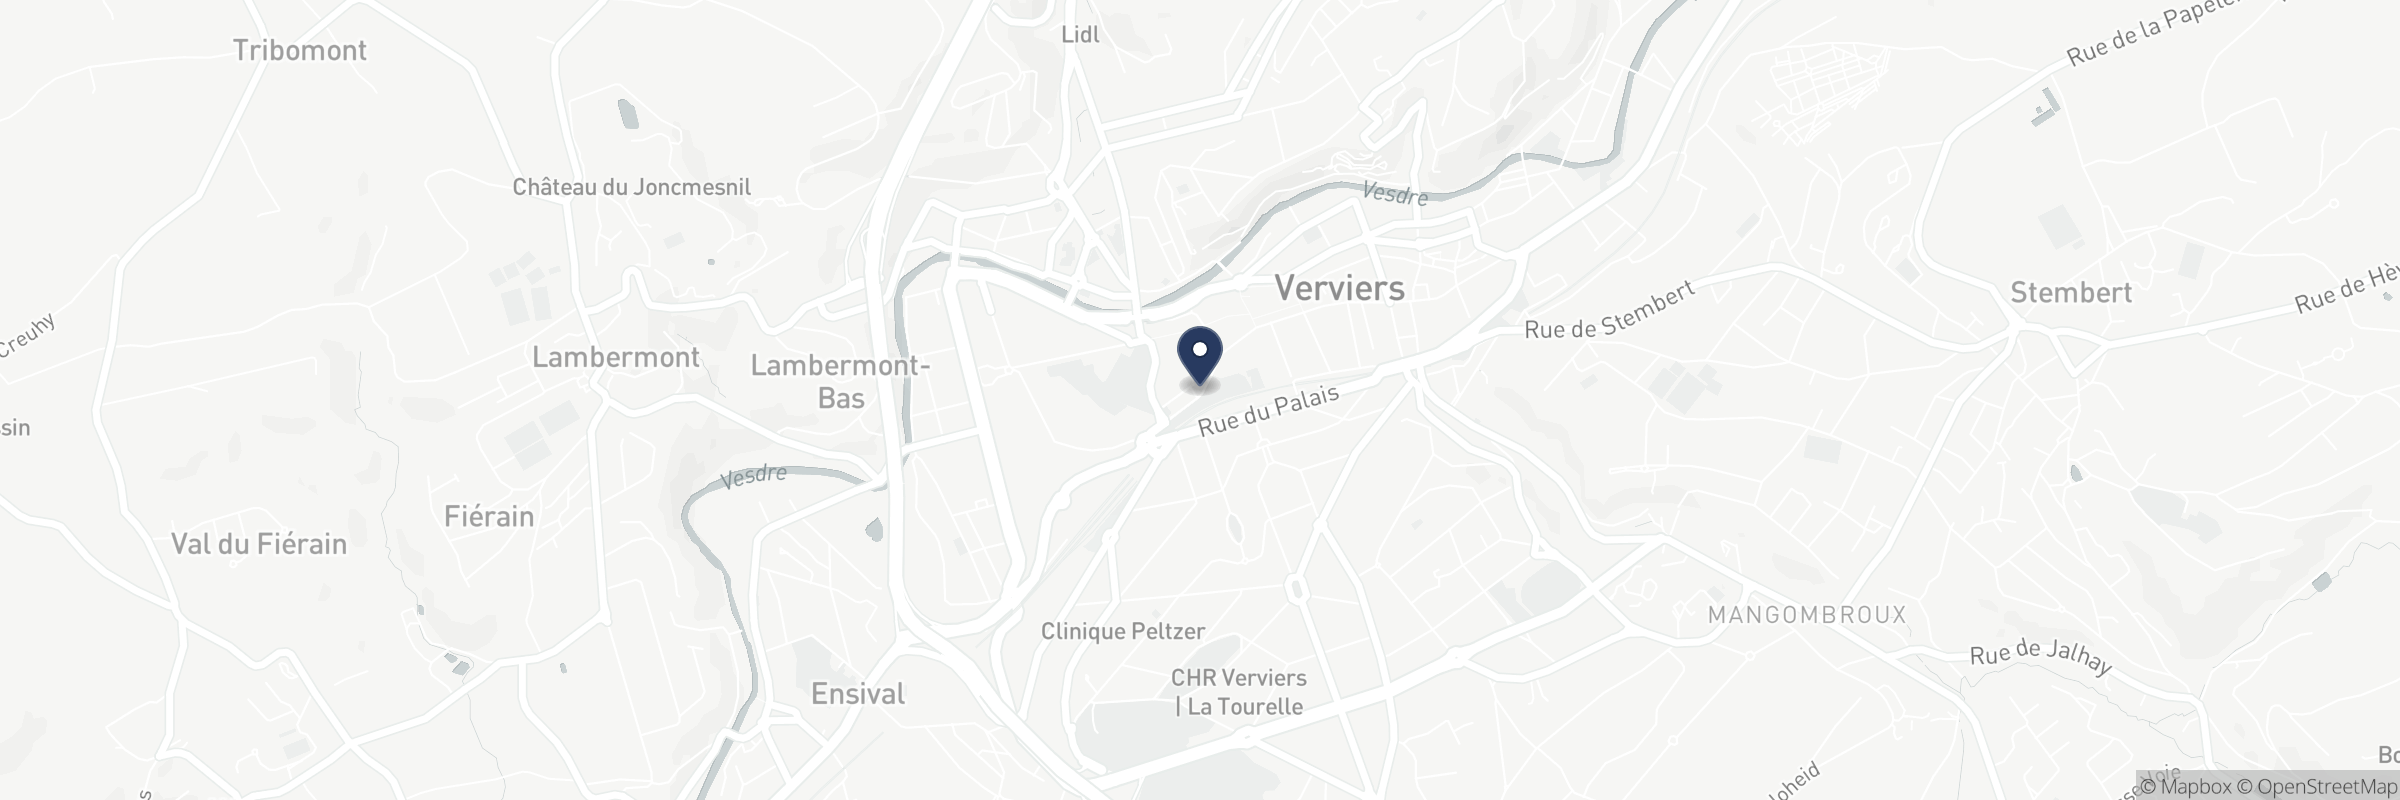 Die Karte zeigt die Adresse von Au Vieux Bourg